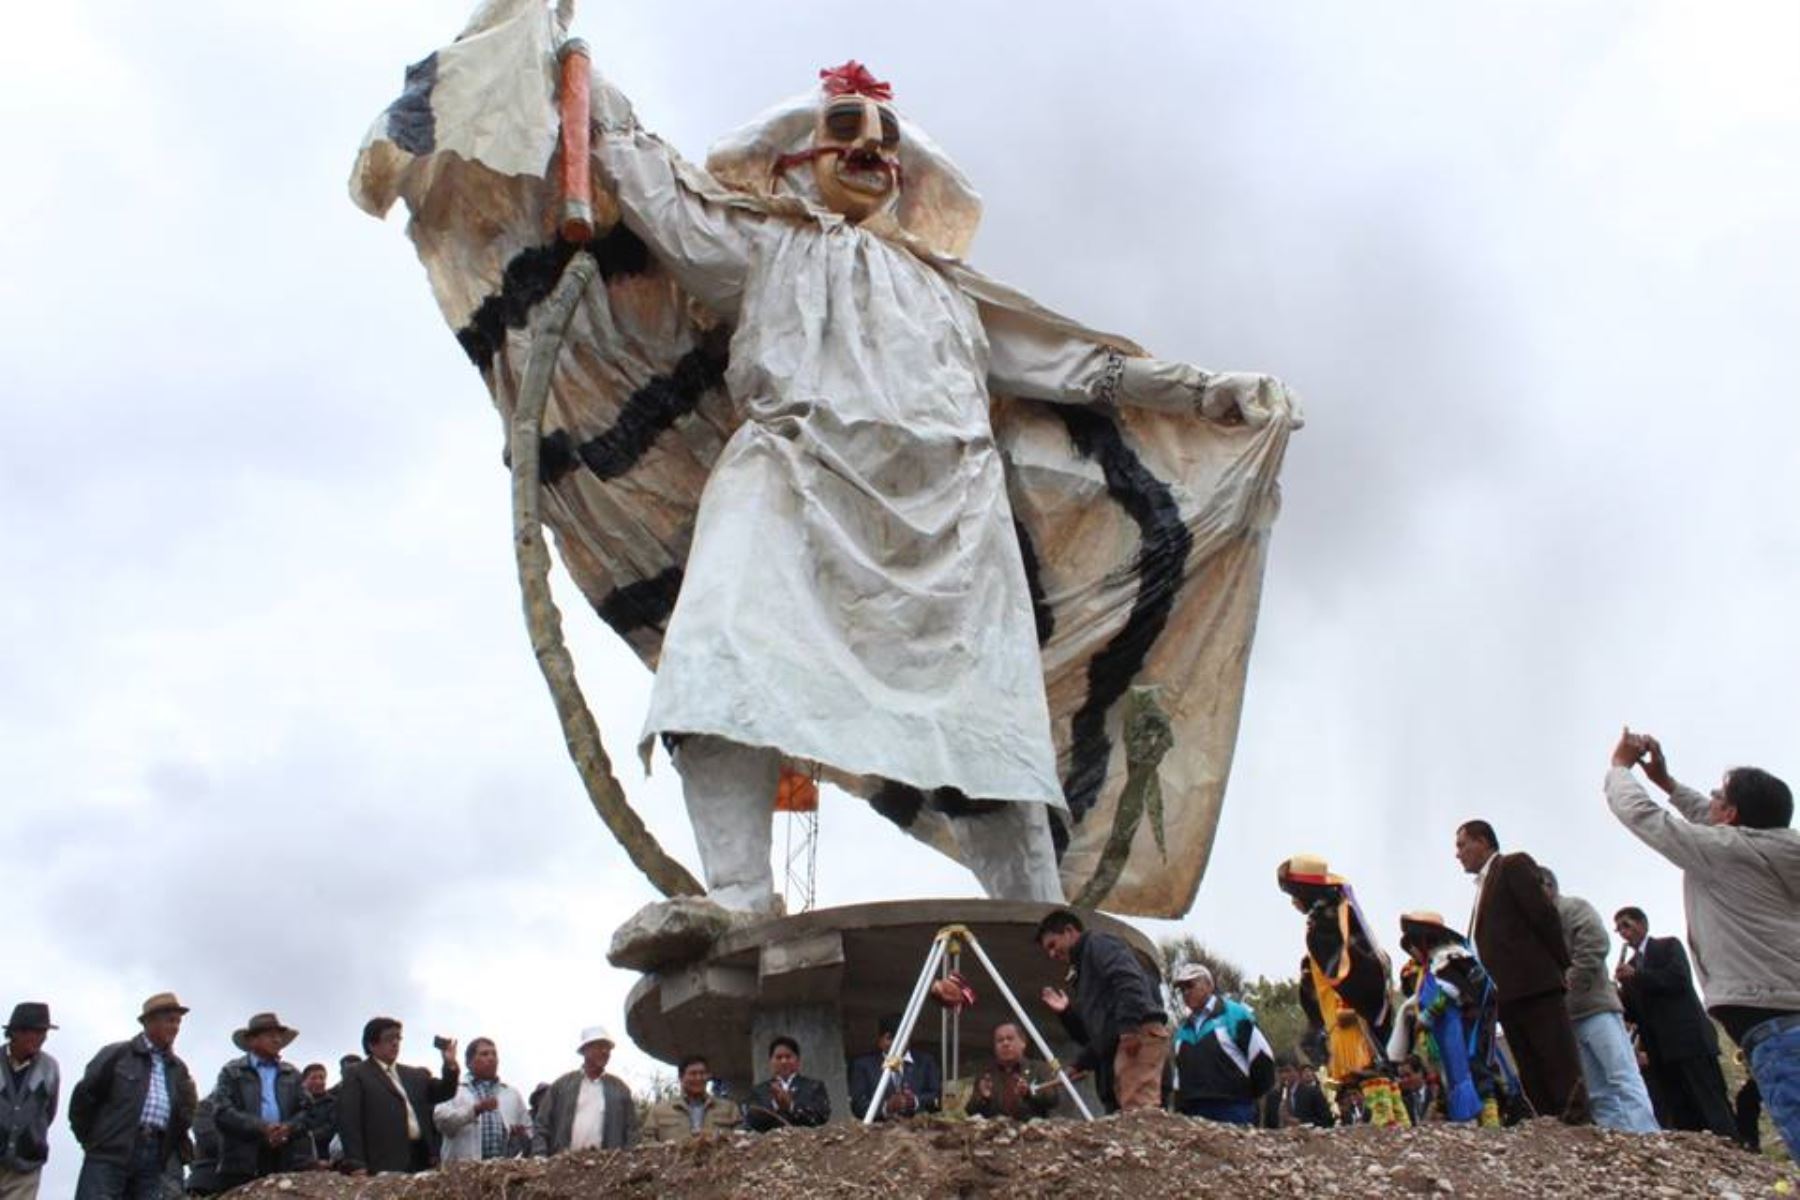 Principal atractivo en fiesta de la Huaconada será estatua gigante.